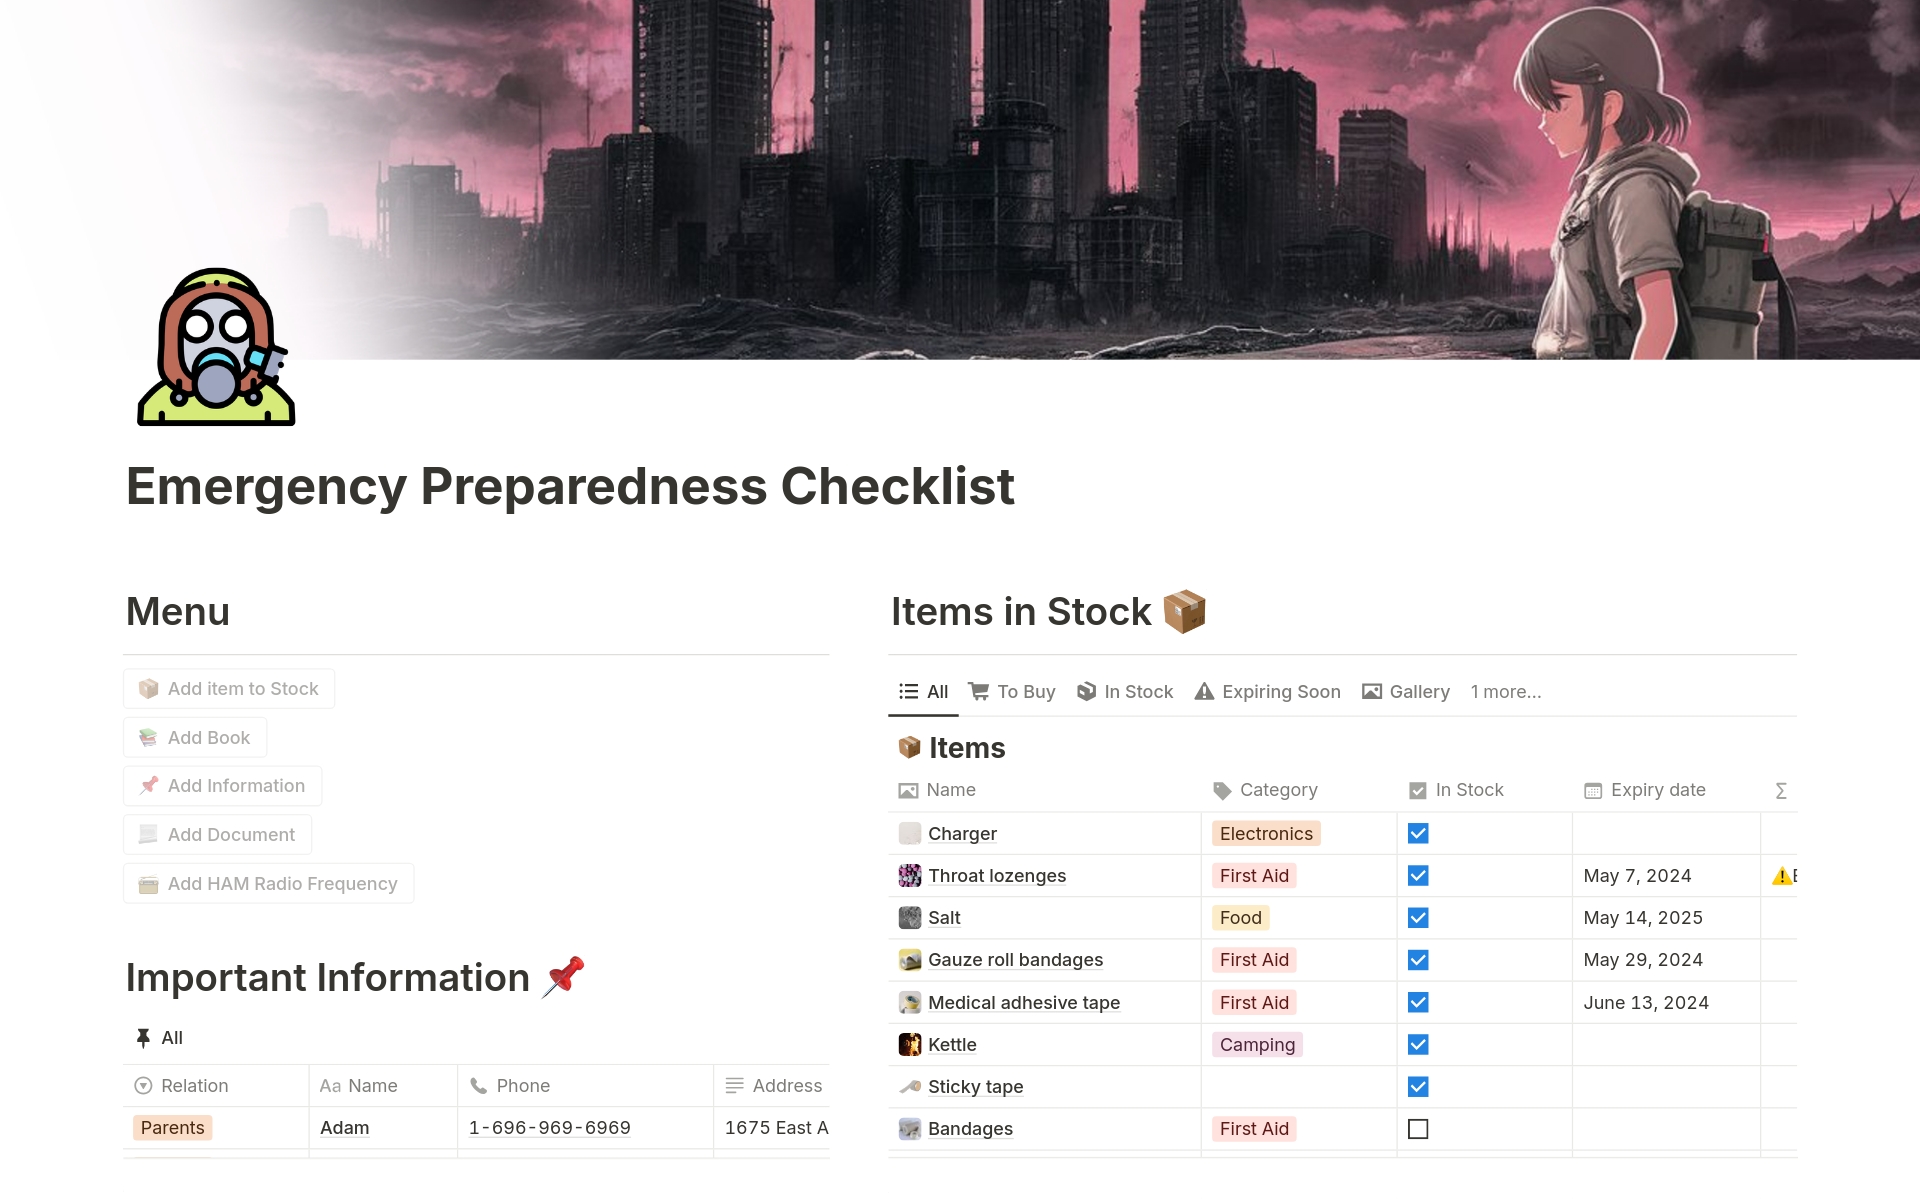 Uma prévia do modelo para Emergency Preparedness Checklist